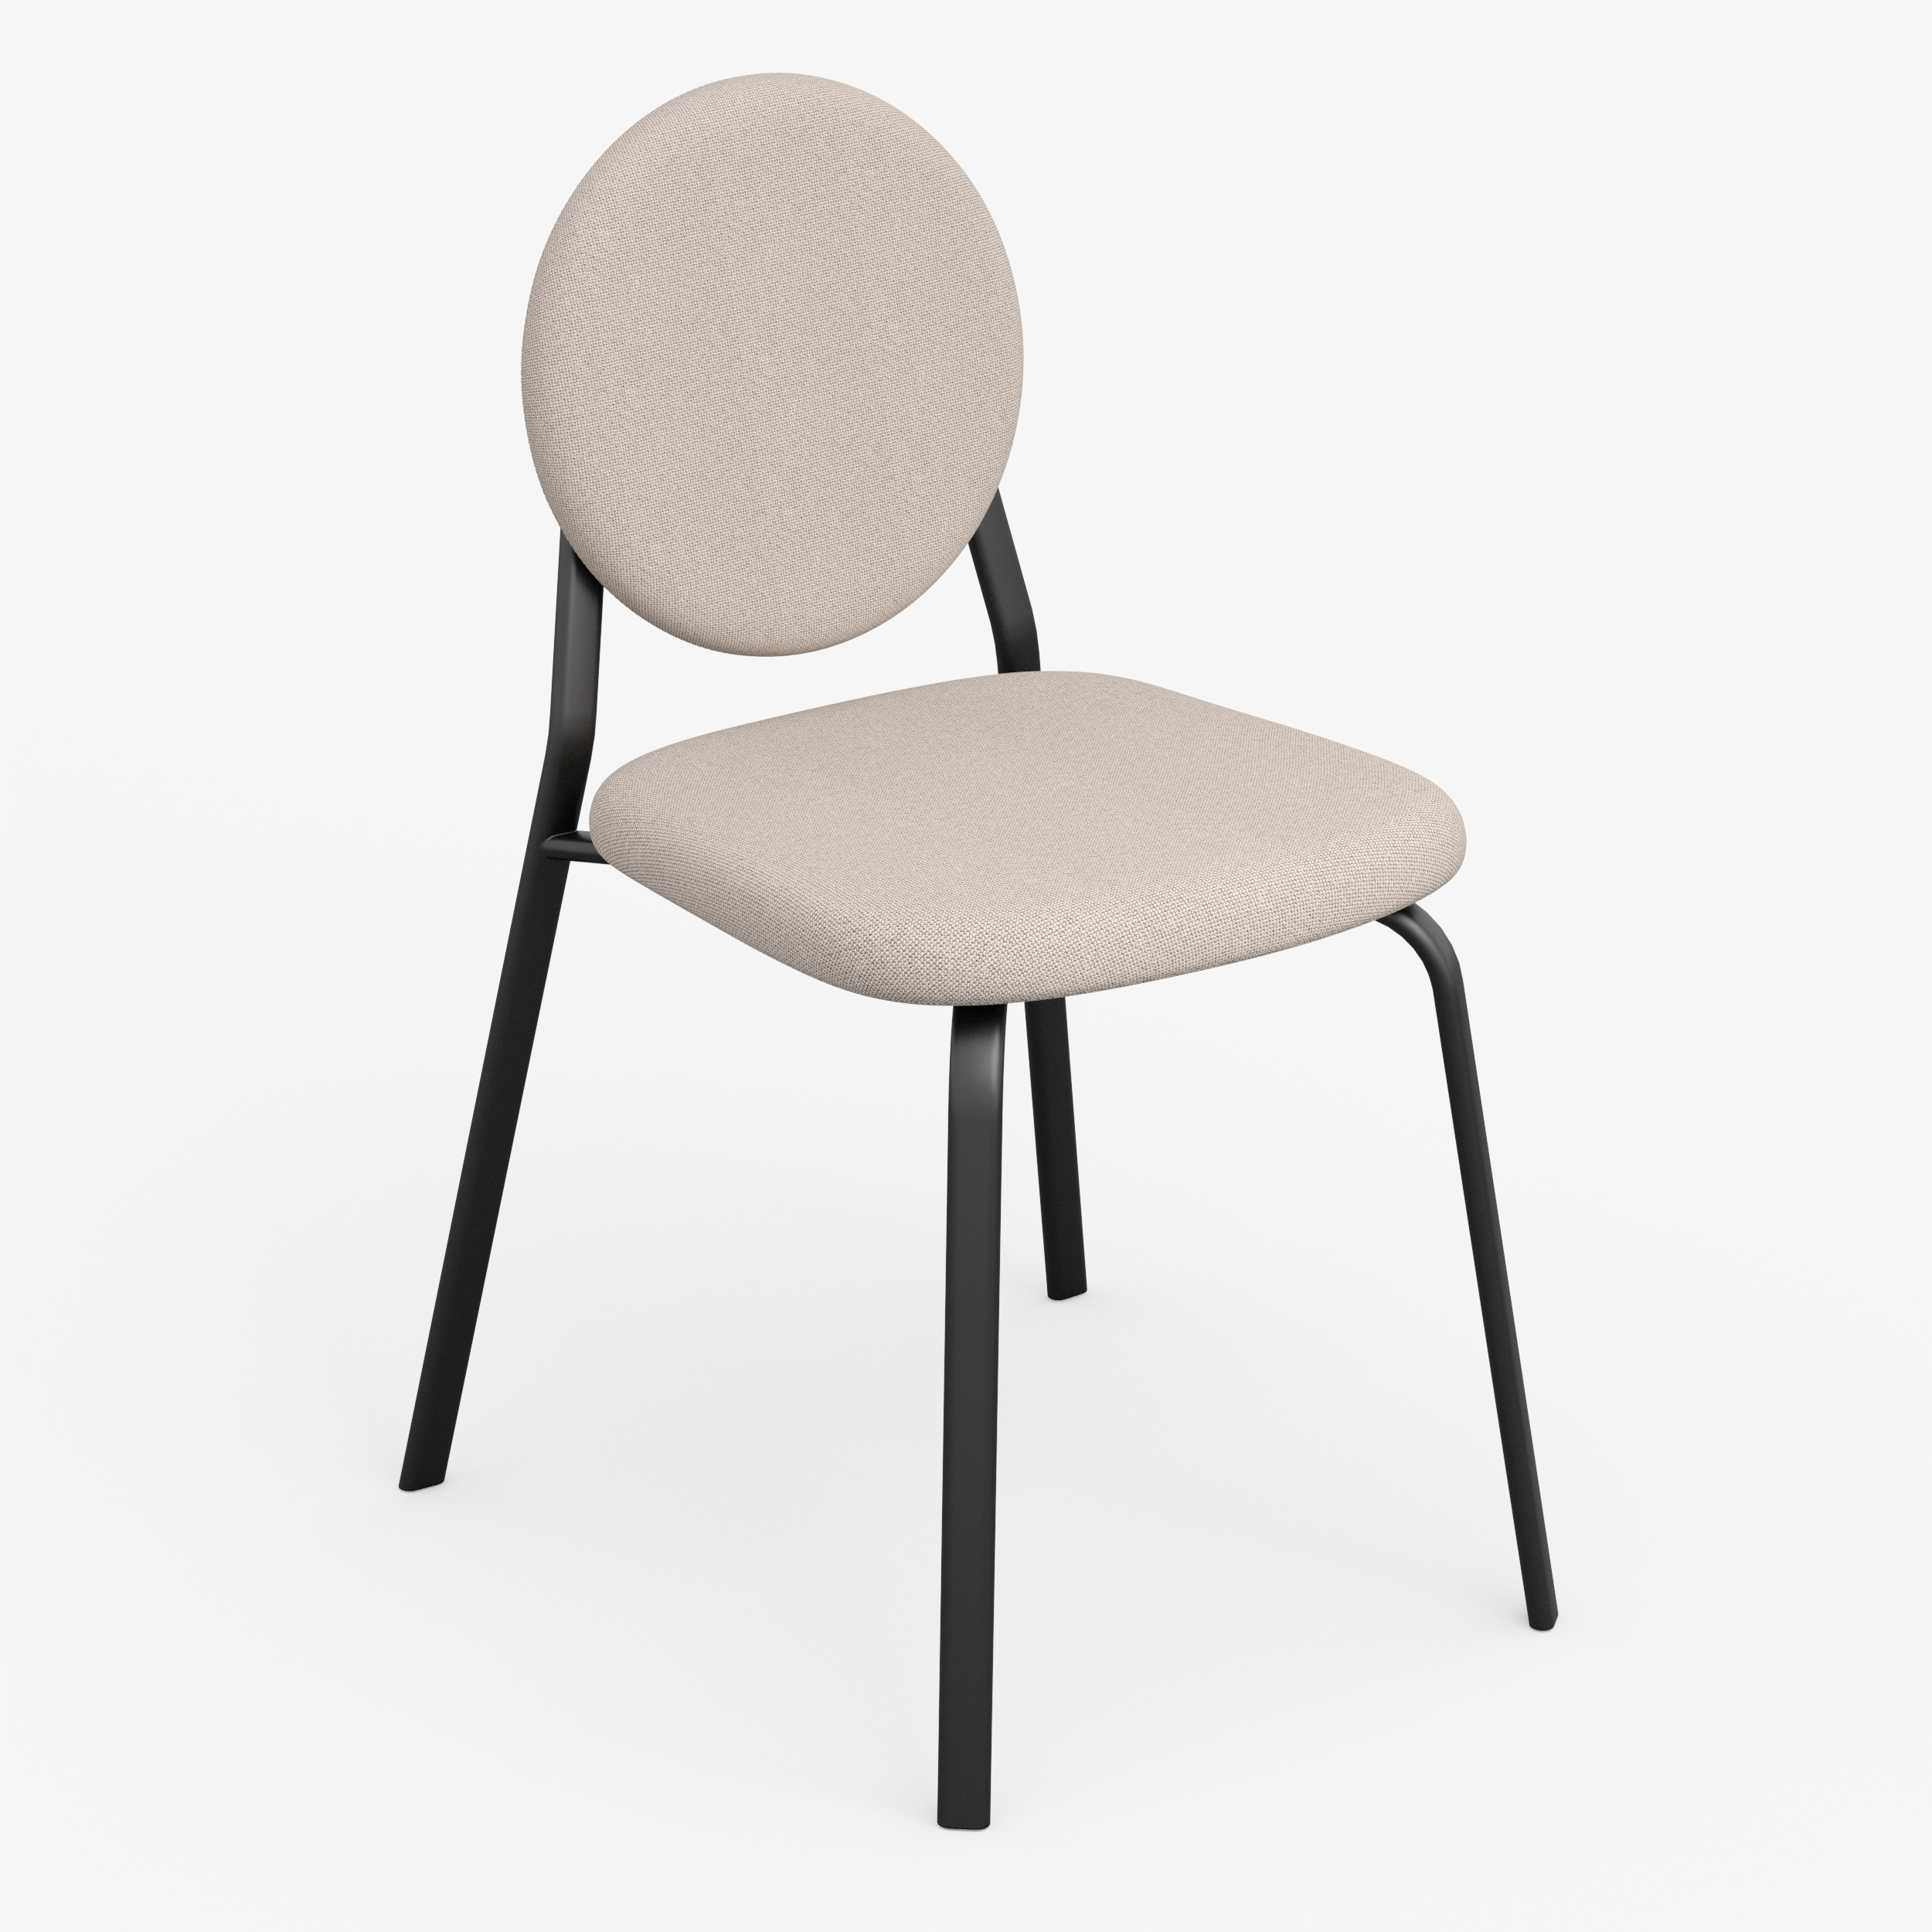 Form - Chair (Round, Beige)